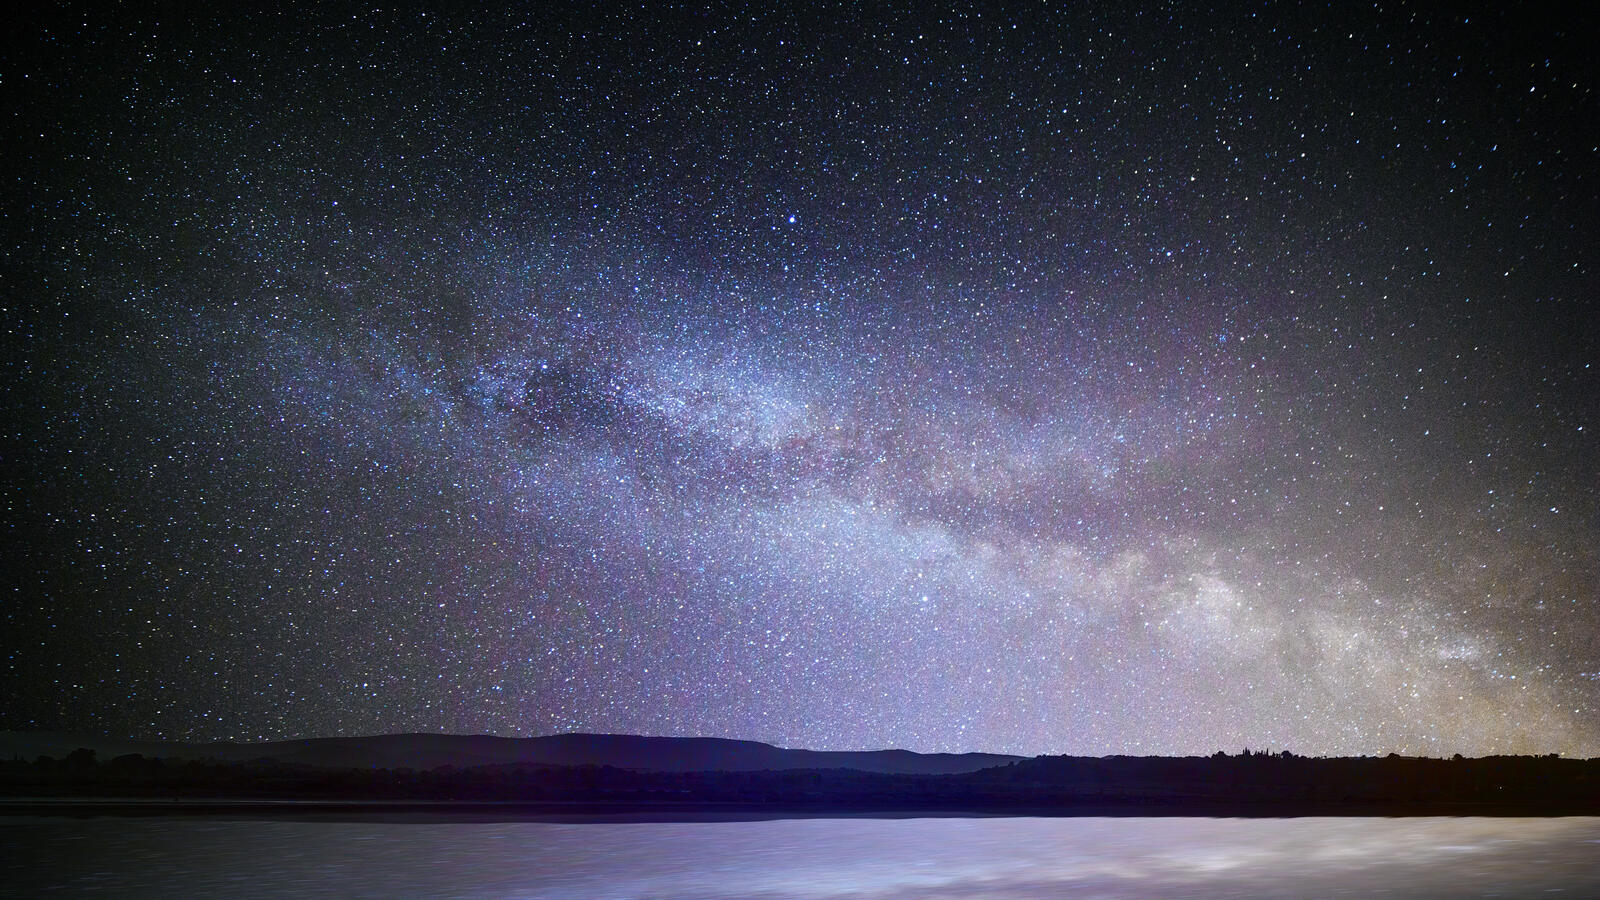 Бесплатное фото Красивое звёздное небо с млечным путём